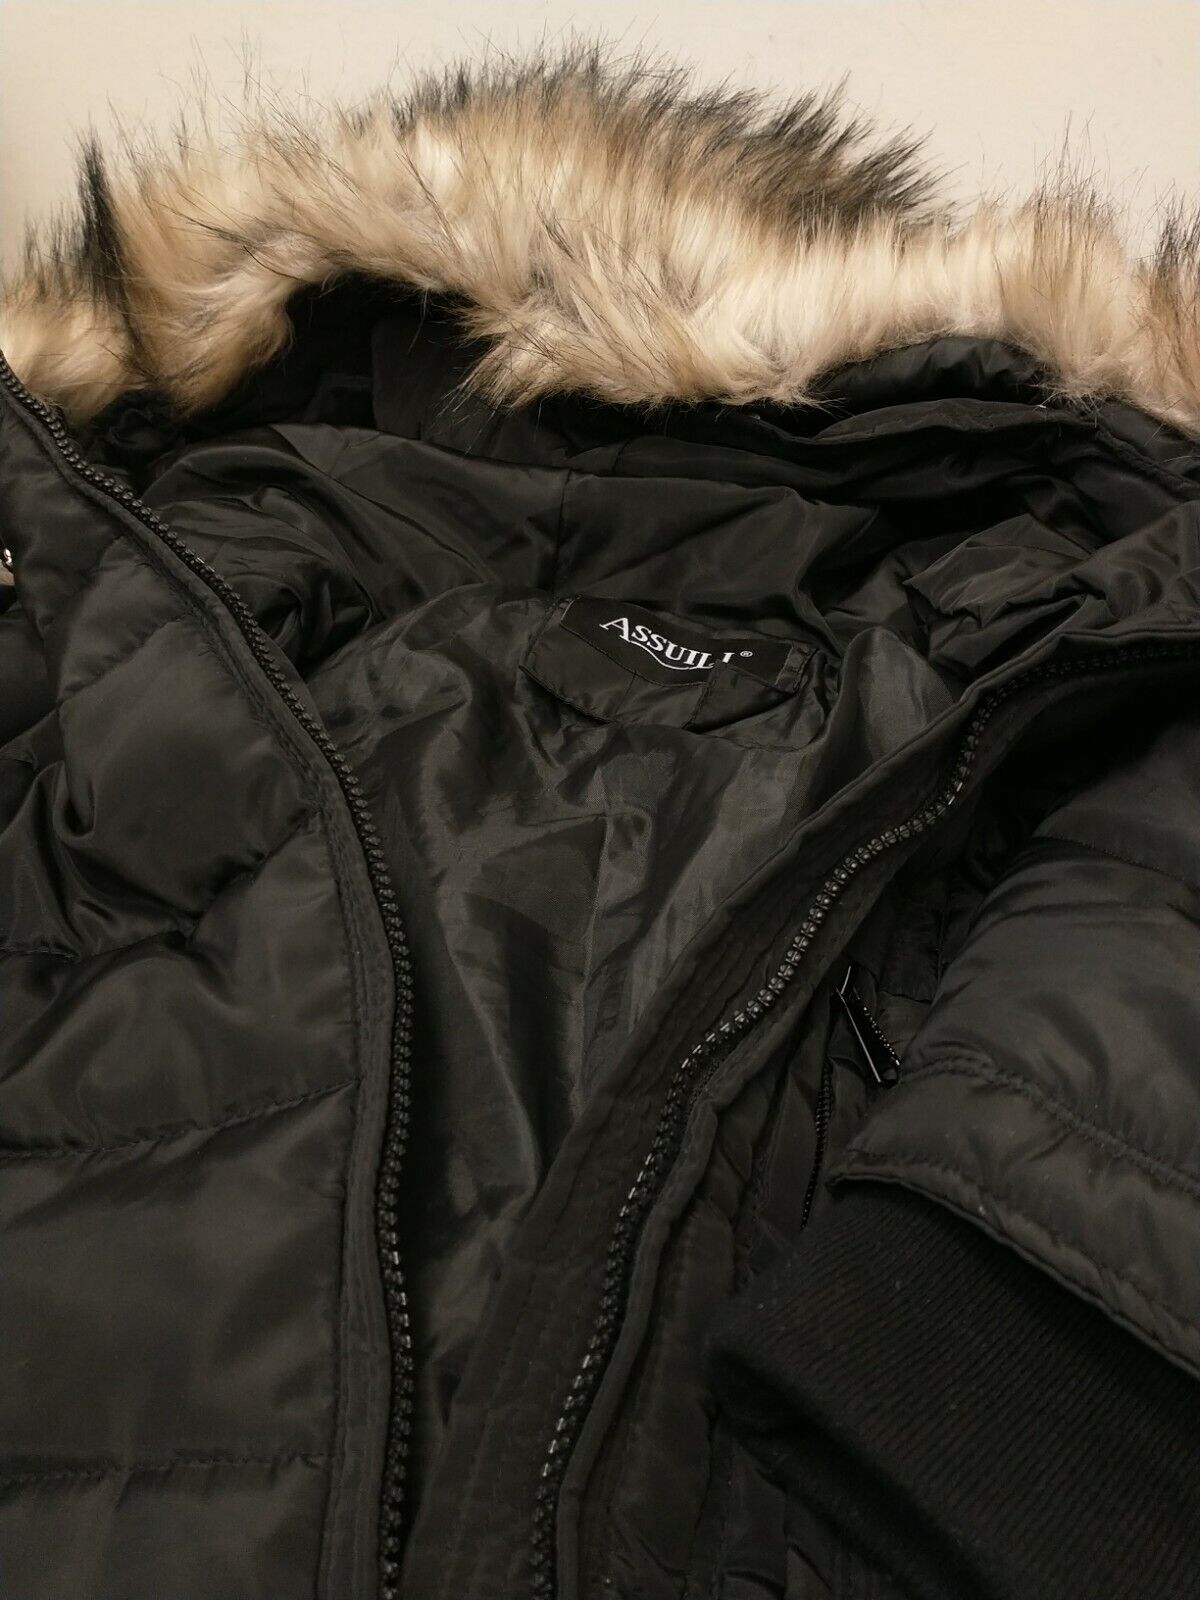 Assuili  Parka Style Coat. Ladies Size 38/M. Faux Fur Trim Removable. Used CT2